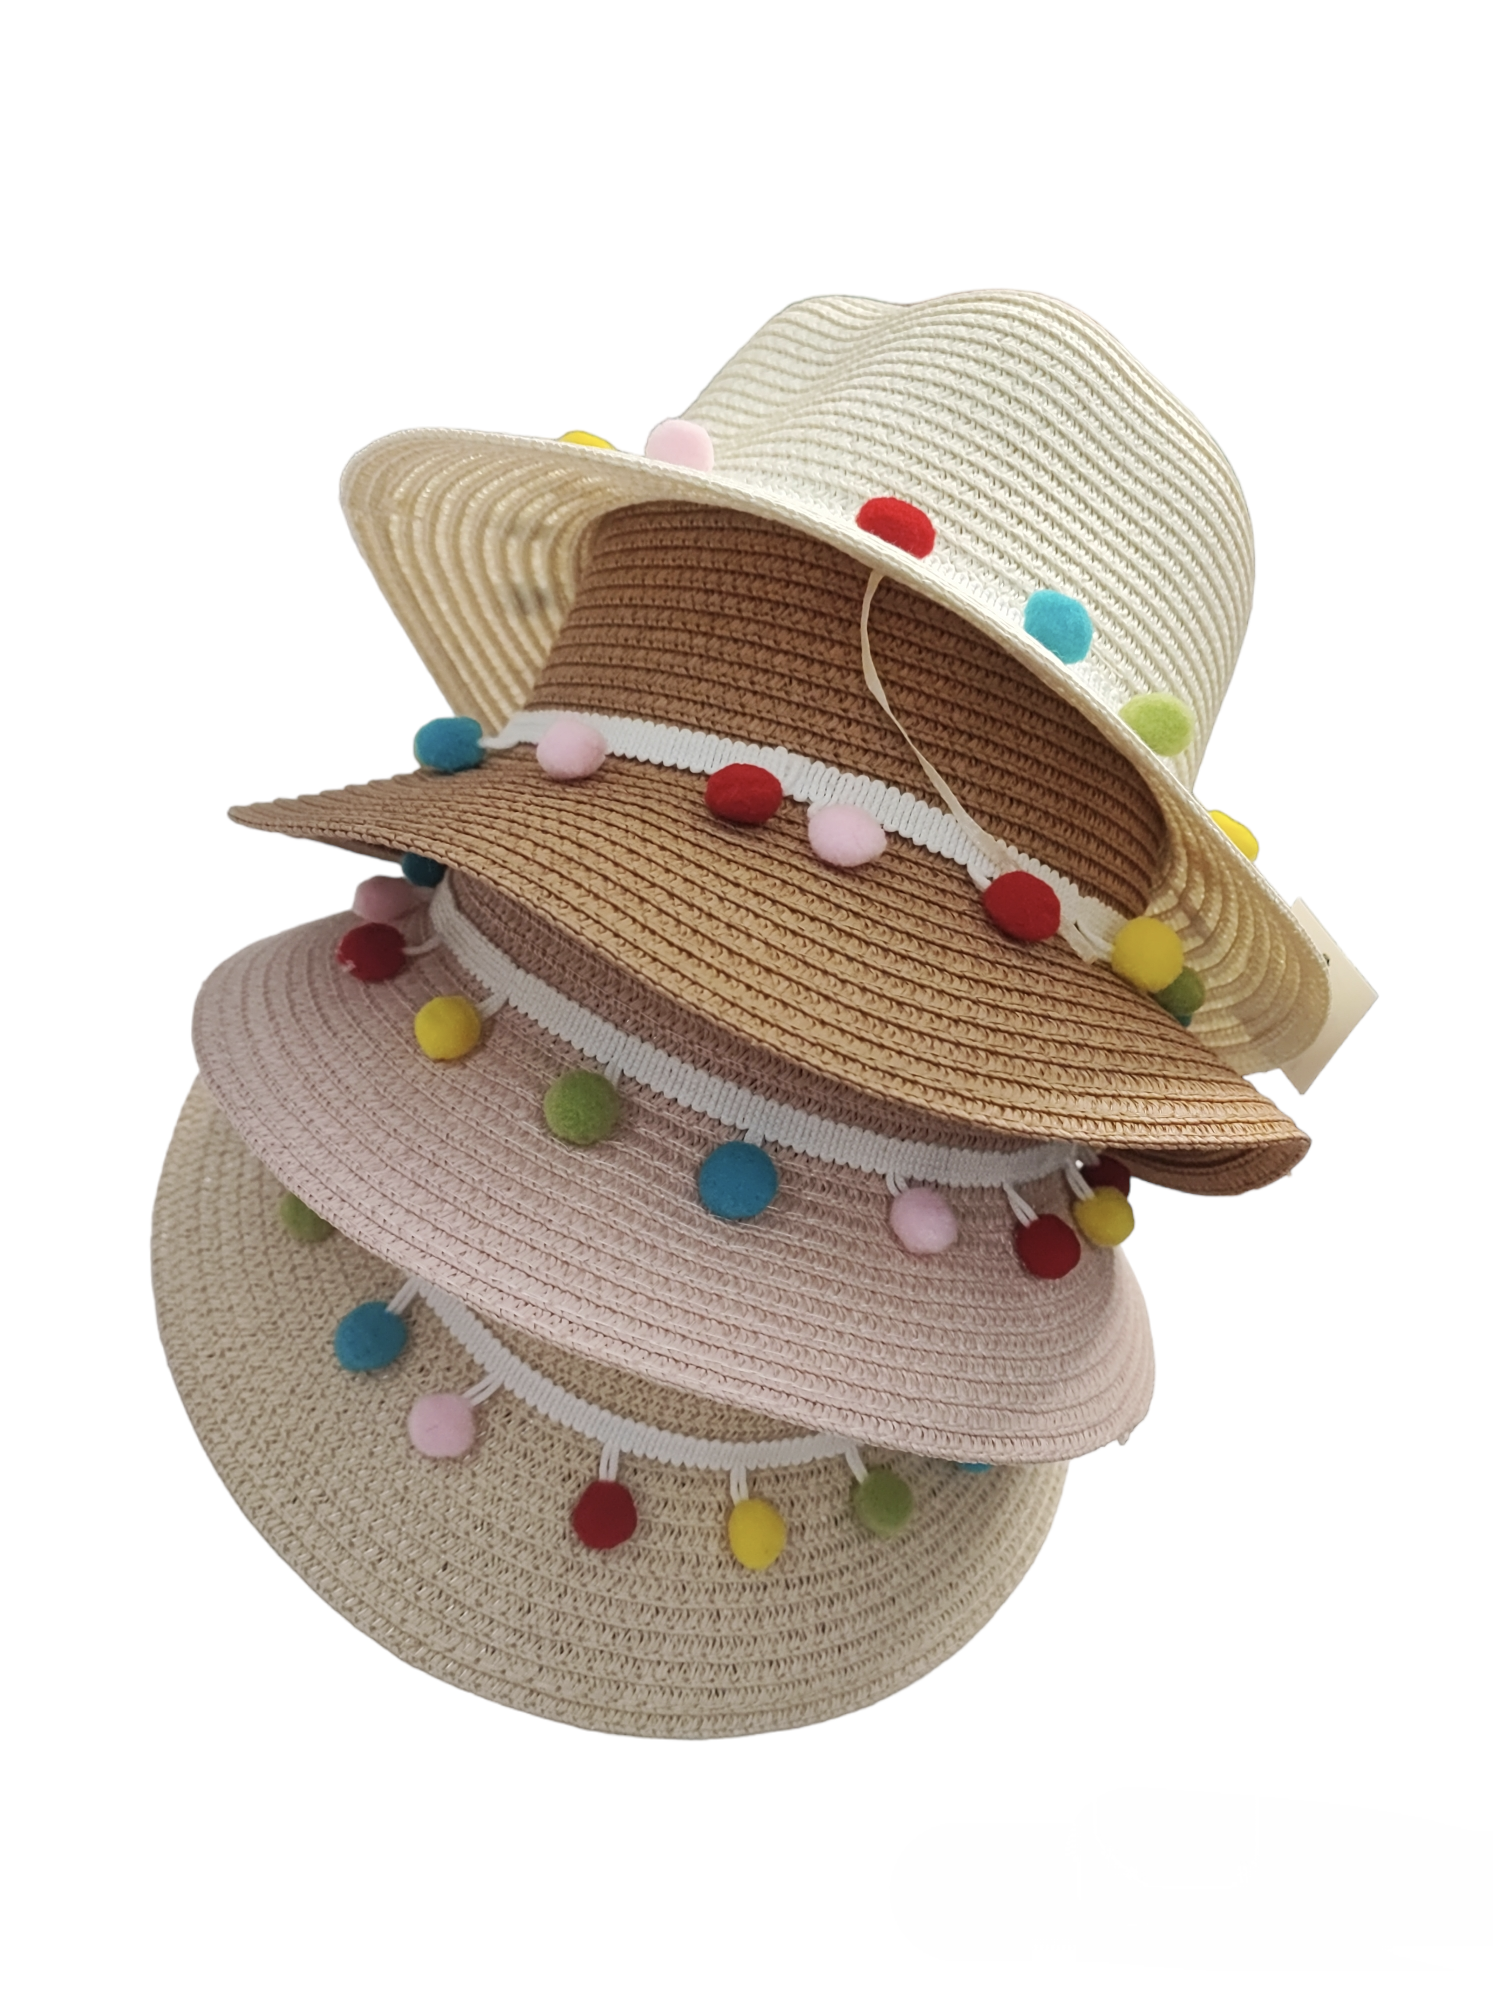 Chapeaux de paille pompon taille enfant    (x12)